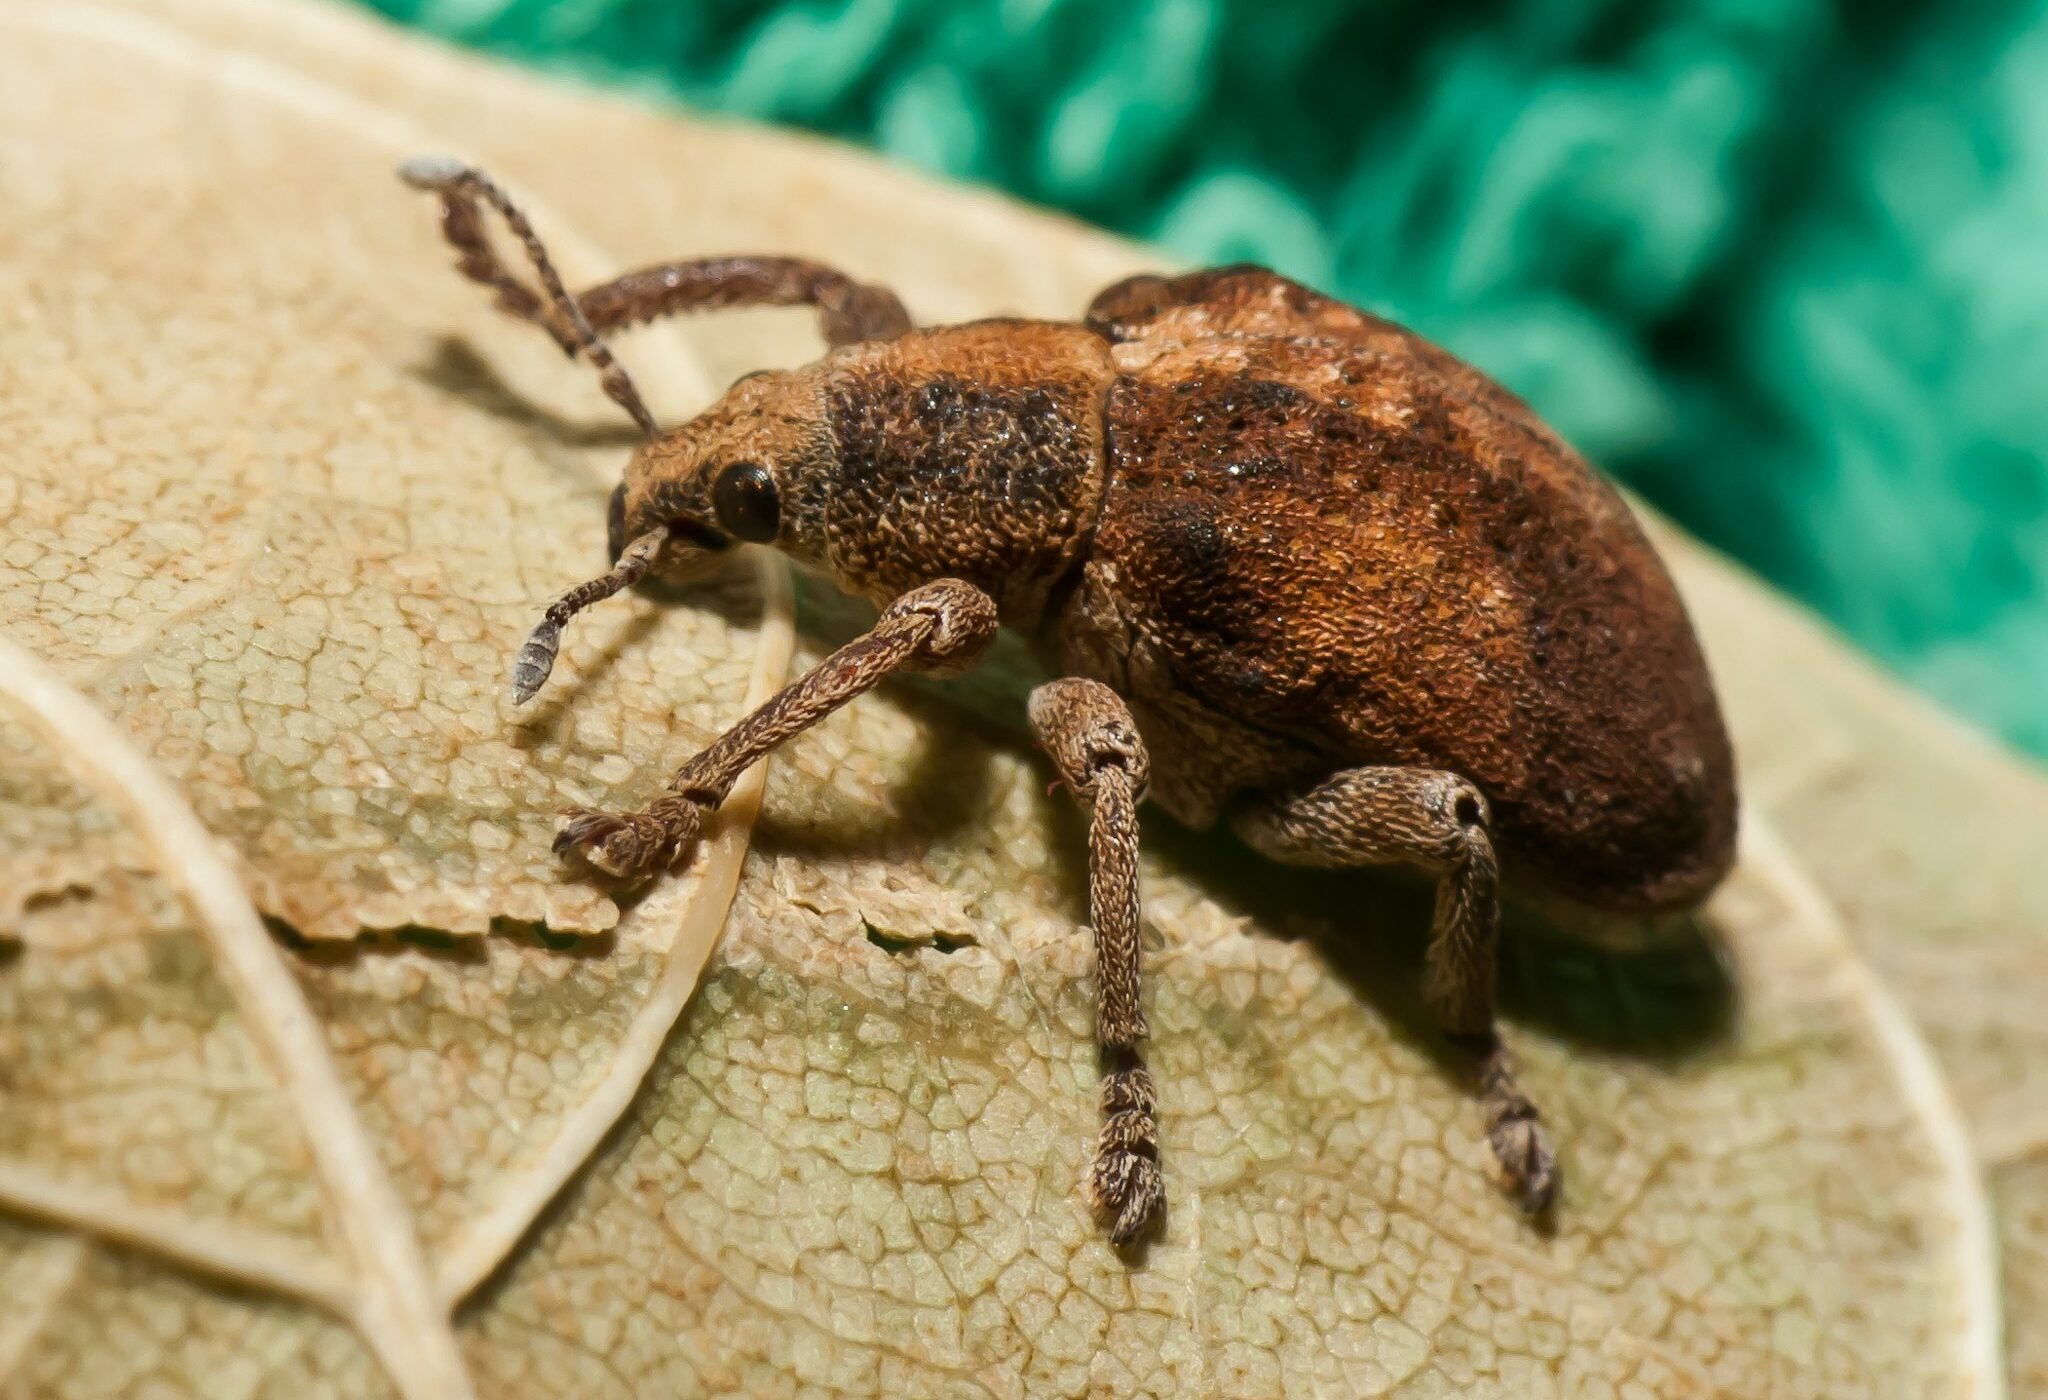 Casi 600 especies de insectos han sido introducidas a Chile en los últimos 500 años